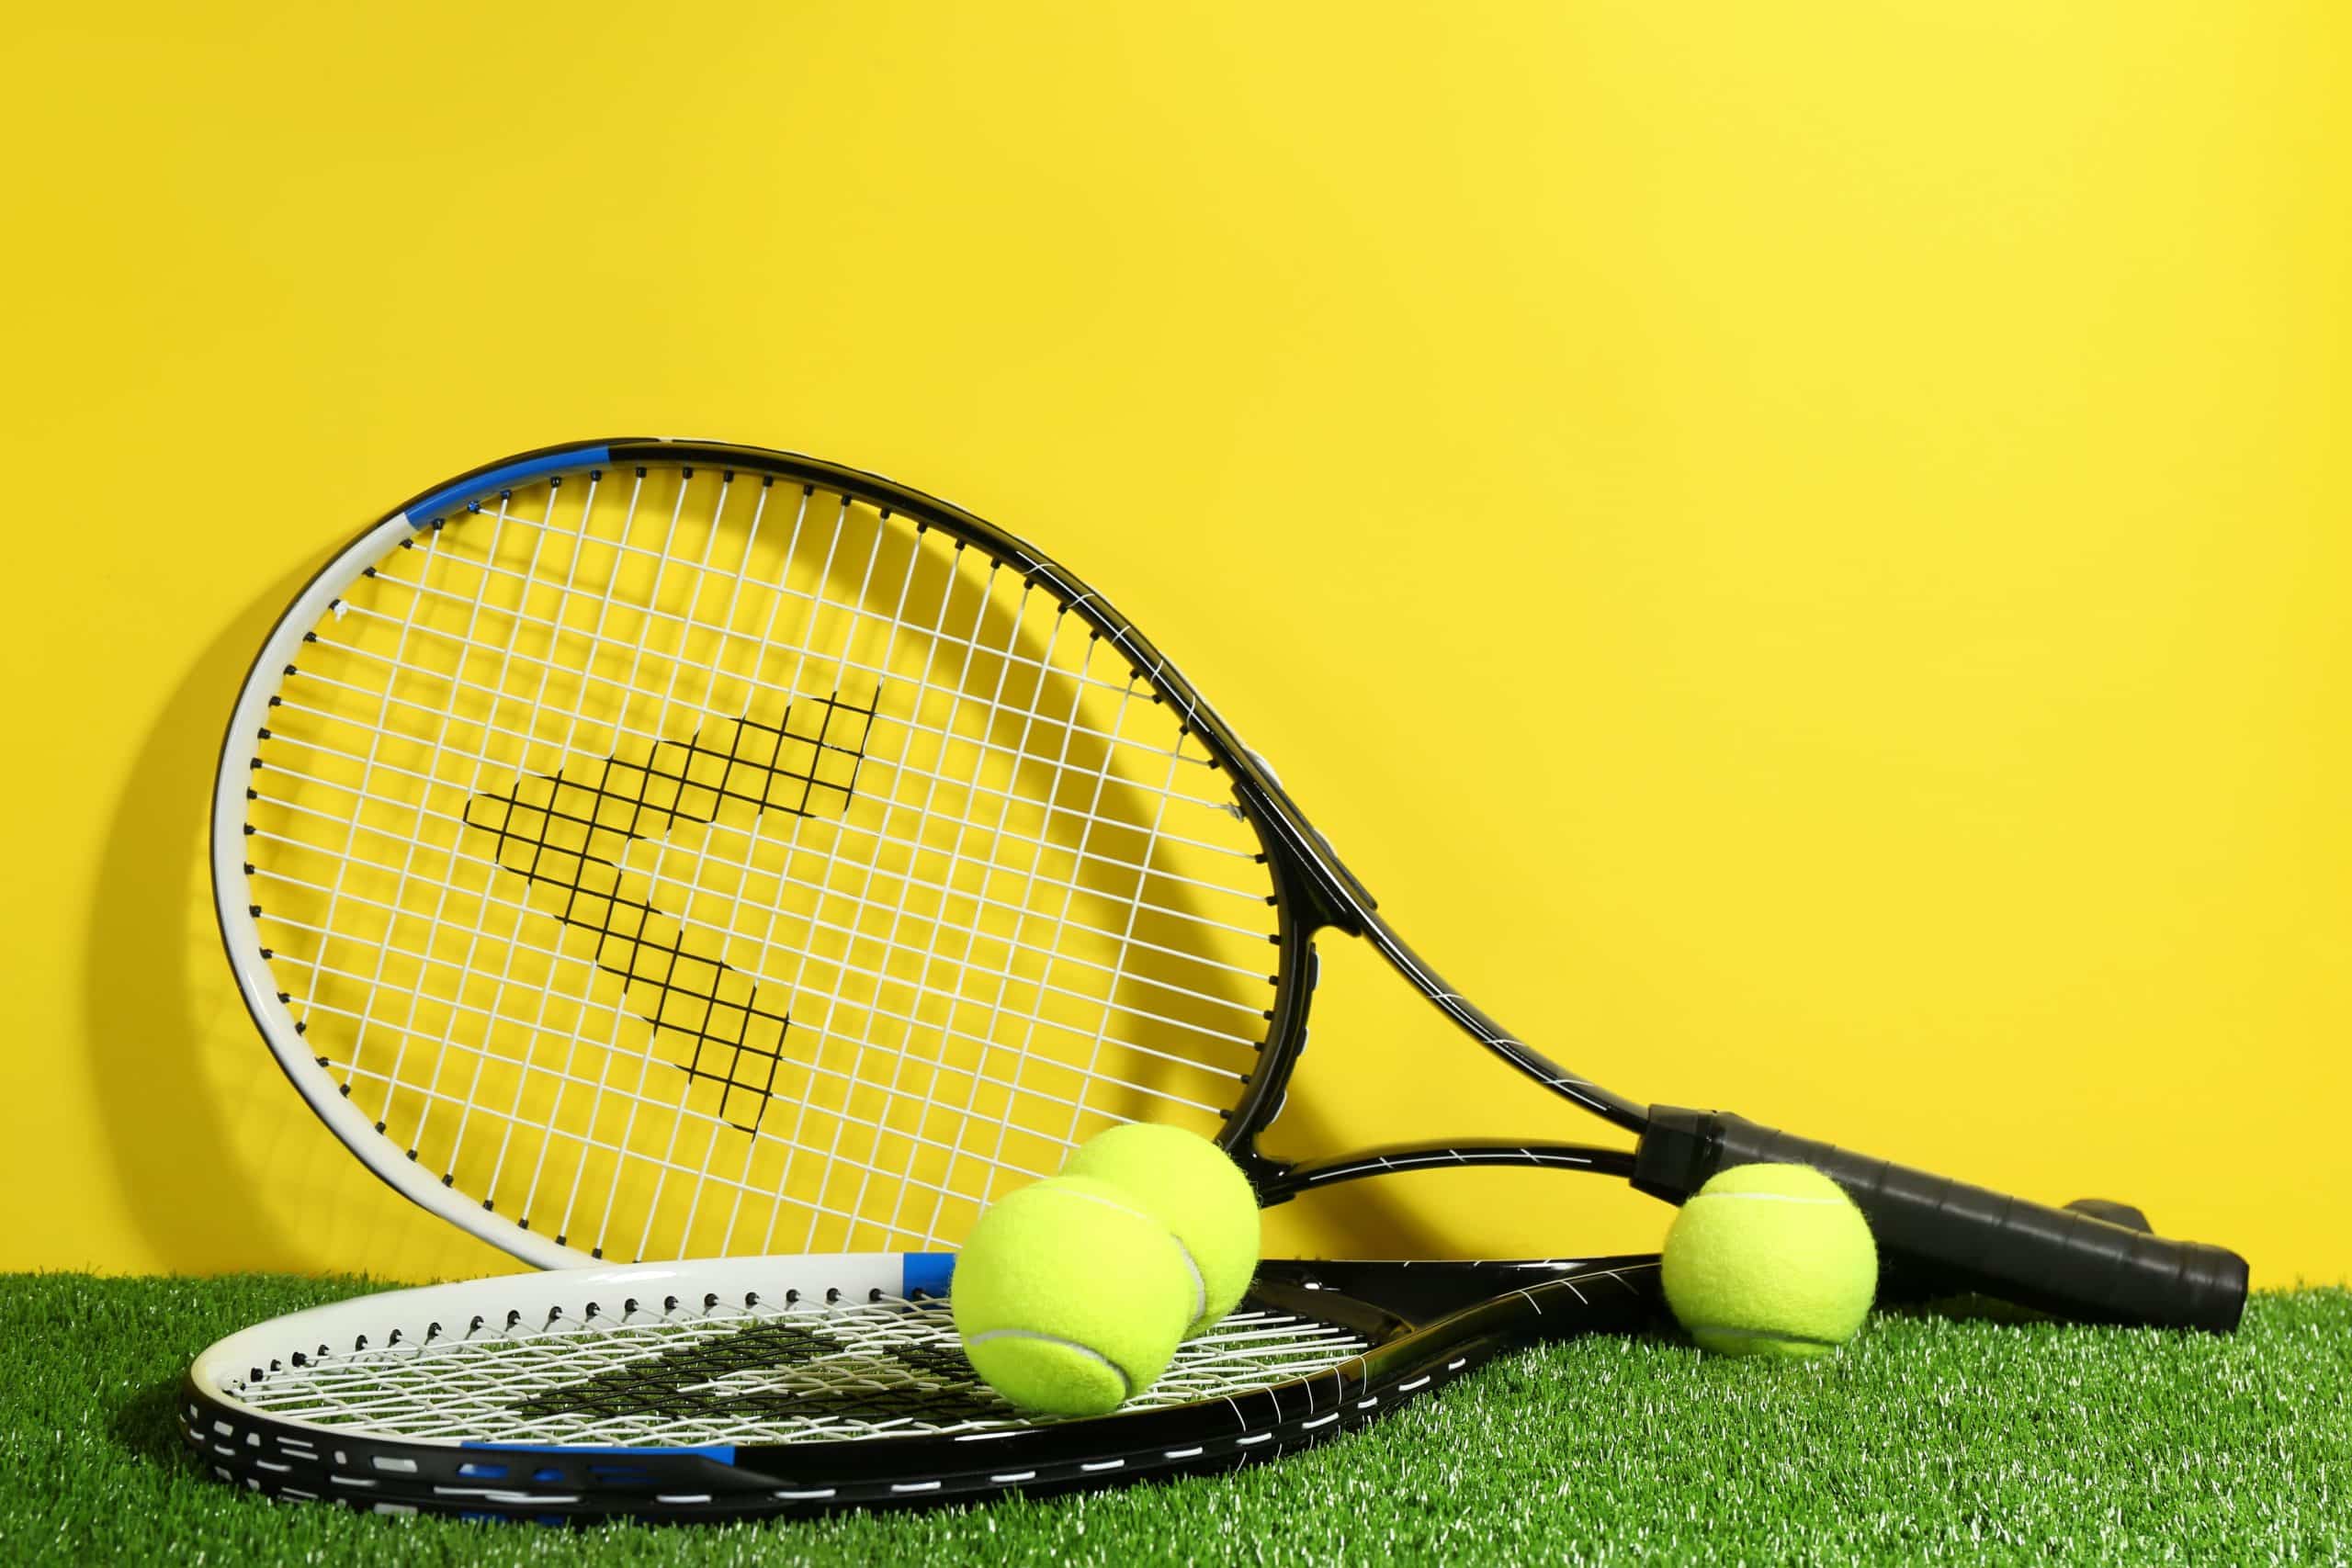 Aprenda as regras básicas do jogo de tênis